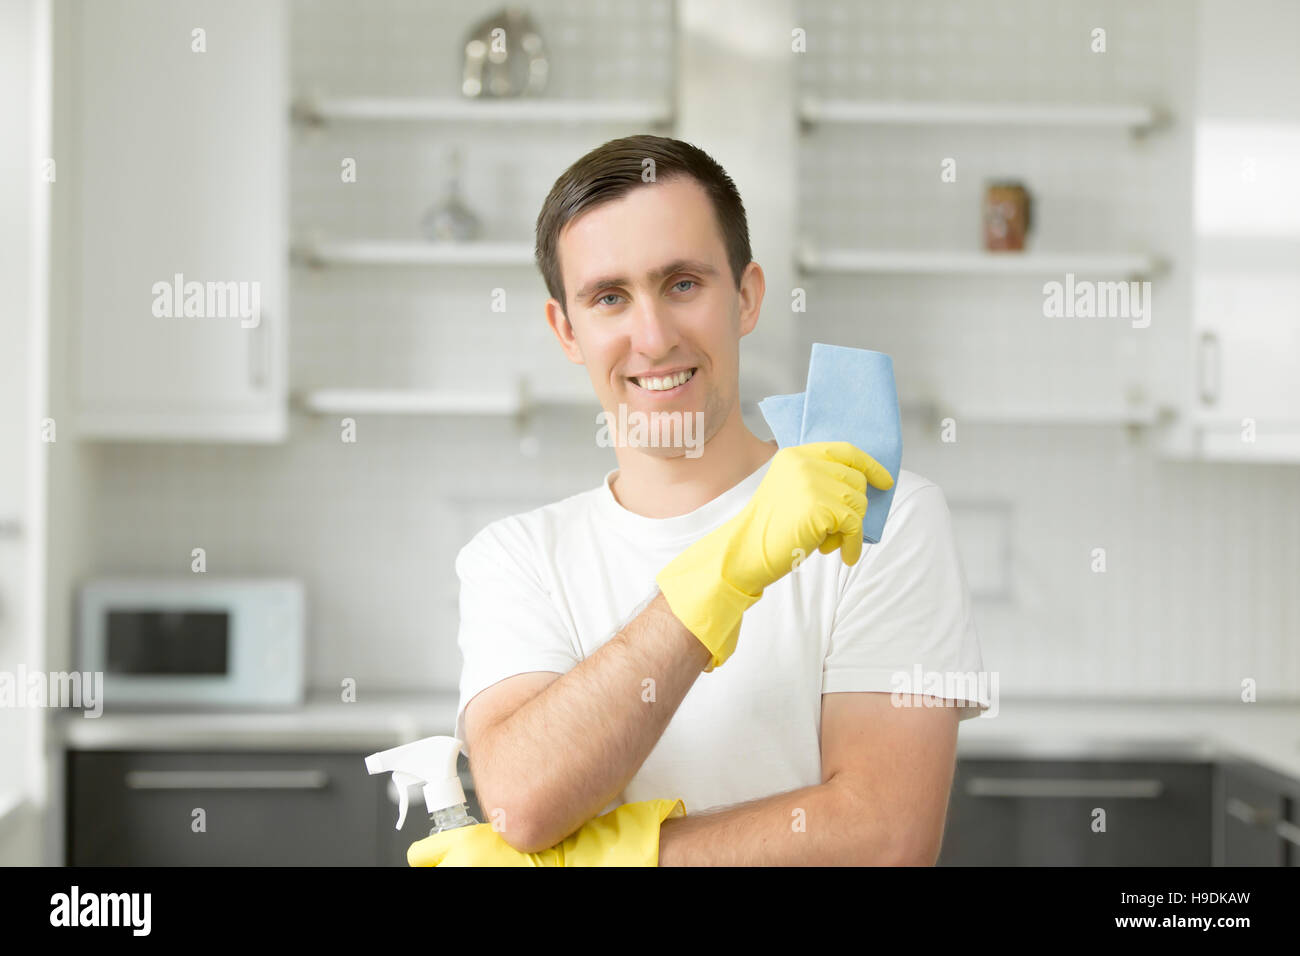 Porträt von lächelnden jungen Mann in der Küche Stockfoto